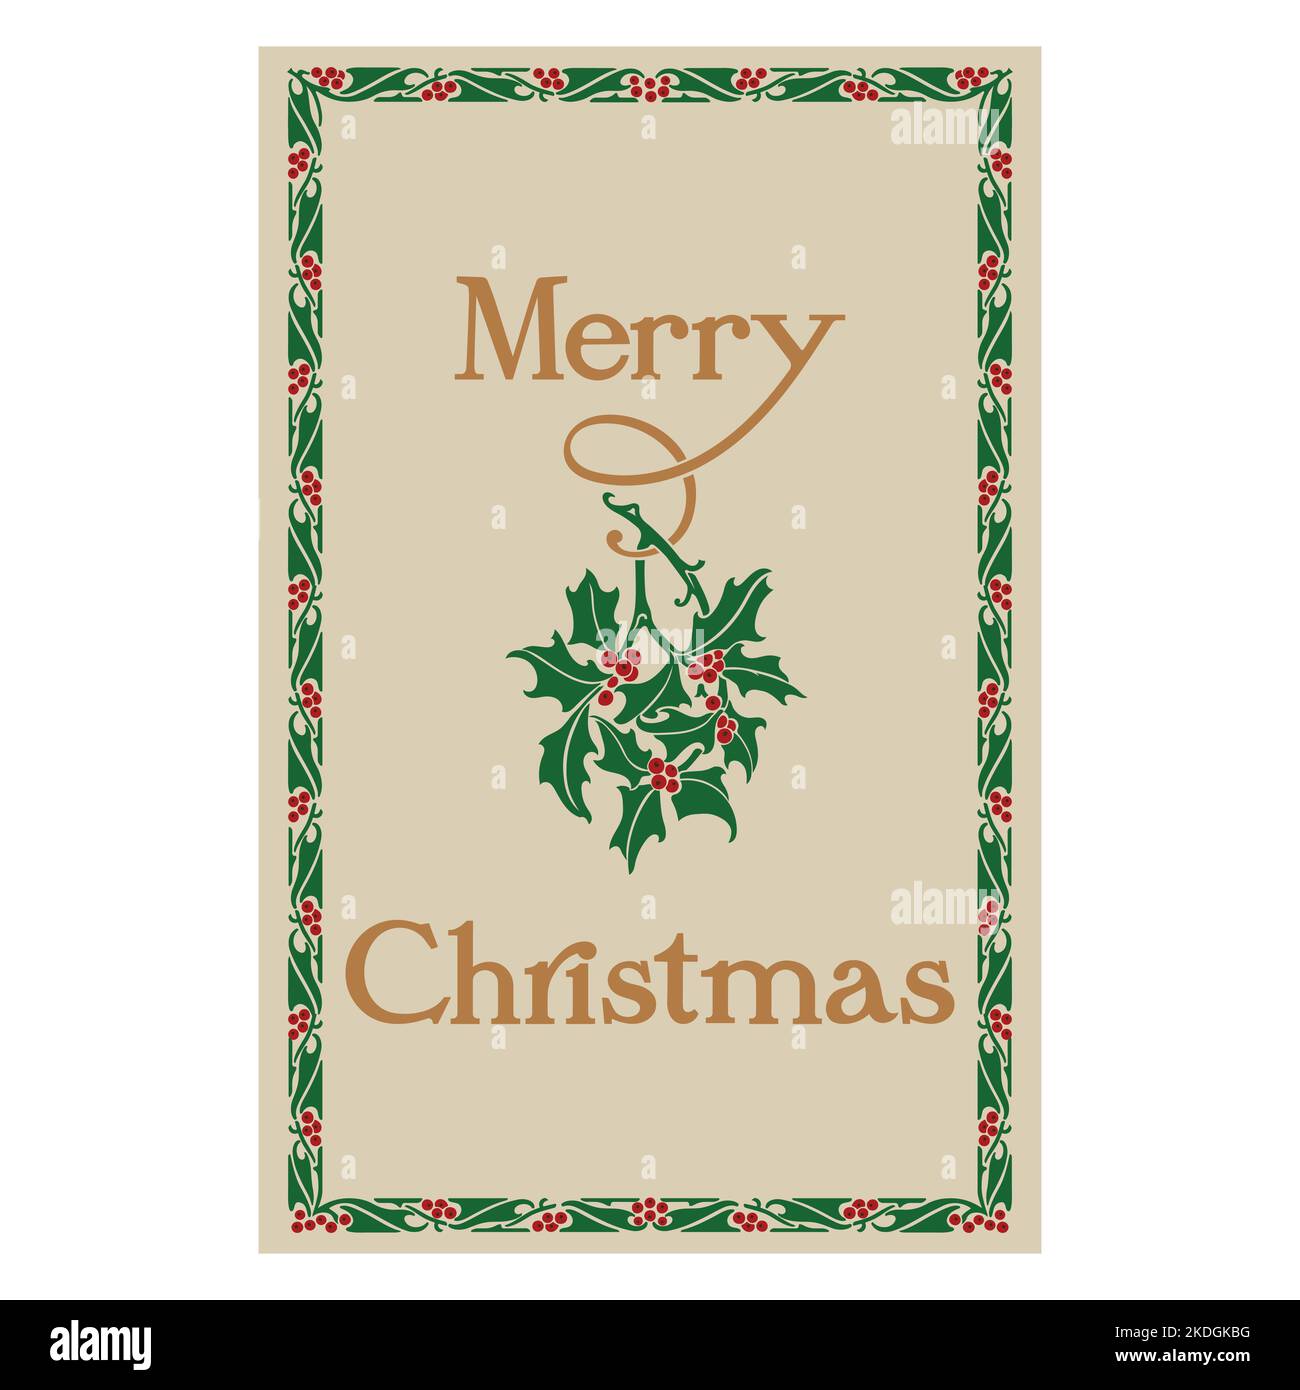 Disegno di Natale per le cartoline. Illustrazione in stile retrò con scritta Holly e vintage Merry Christmas Illustrazione Vettoriale